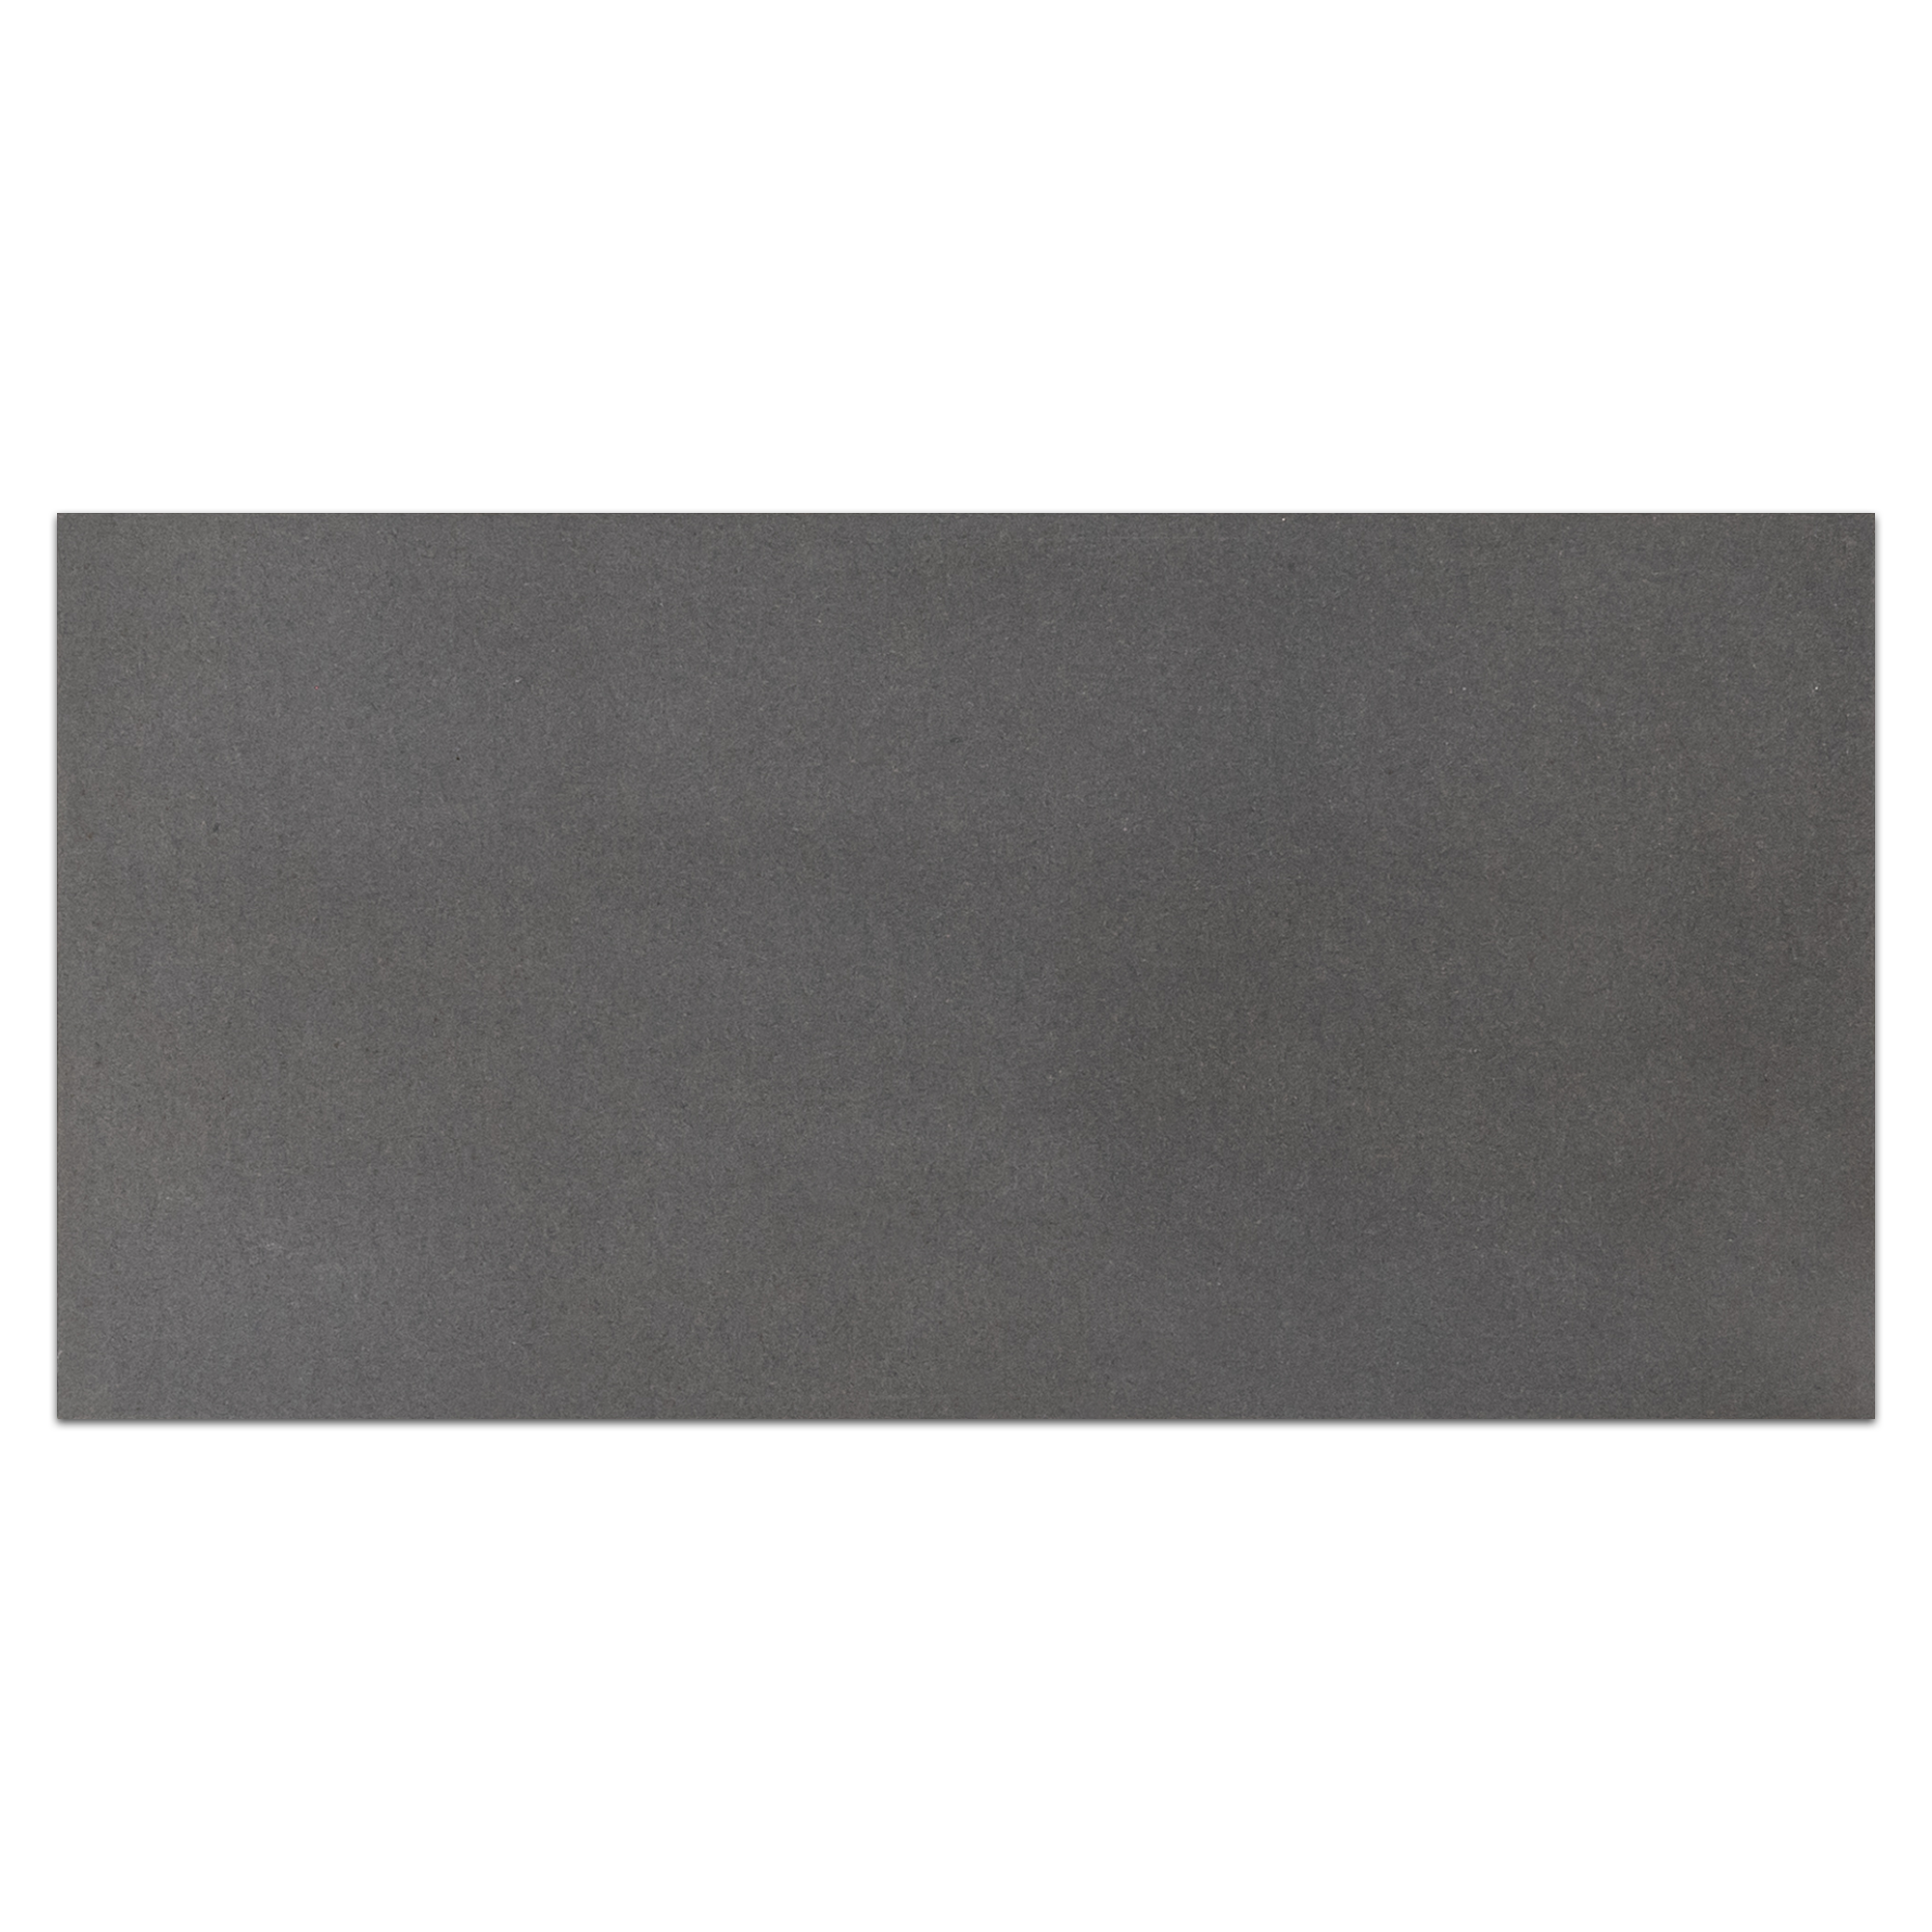 Elon grey basalt rectangle field tile 12x24x0.375 honed VT1224H - Surface Group International